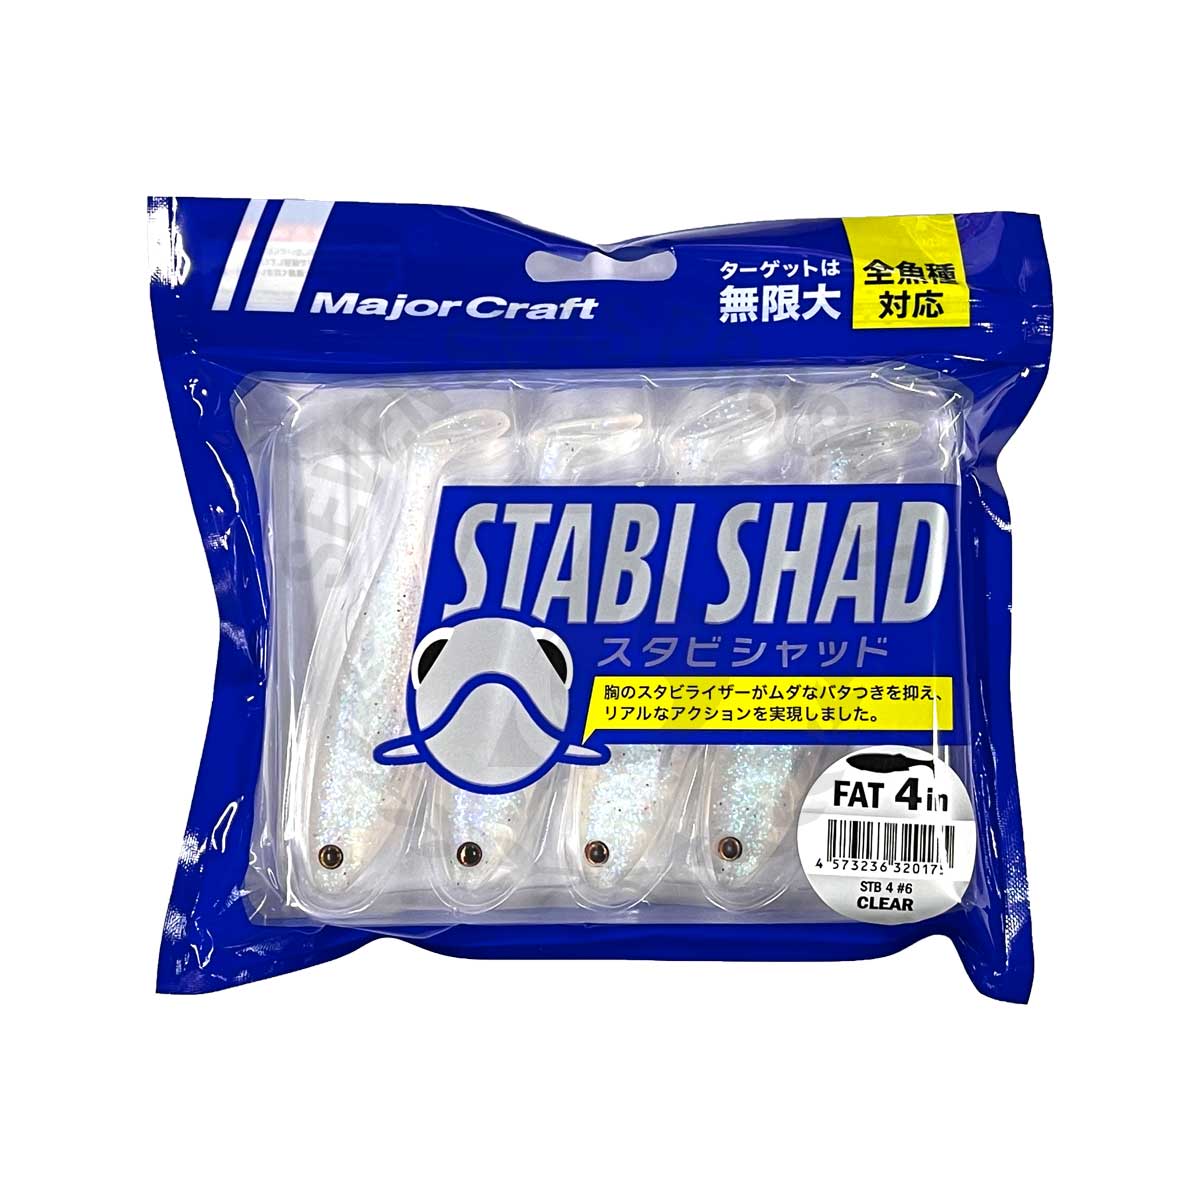 Major Craft Stabi Shad STB-FAT 4 #6-Clear*เหยื่อปลายาง - 7 SEAS PROSHOP  (THAILAND)